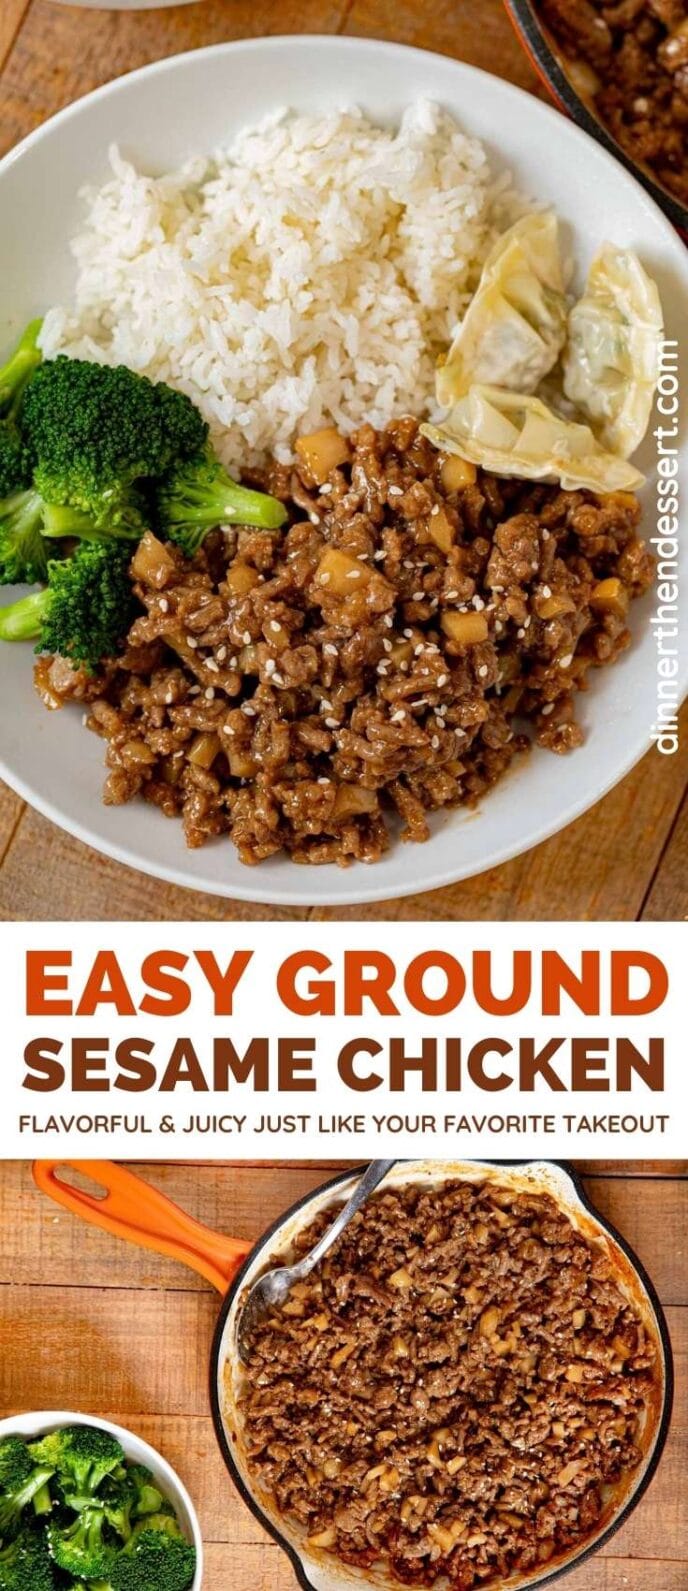 Ground Sesame Chicken collage